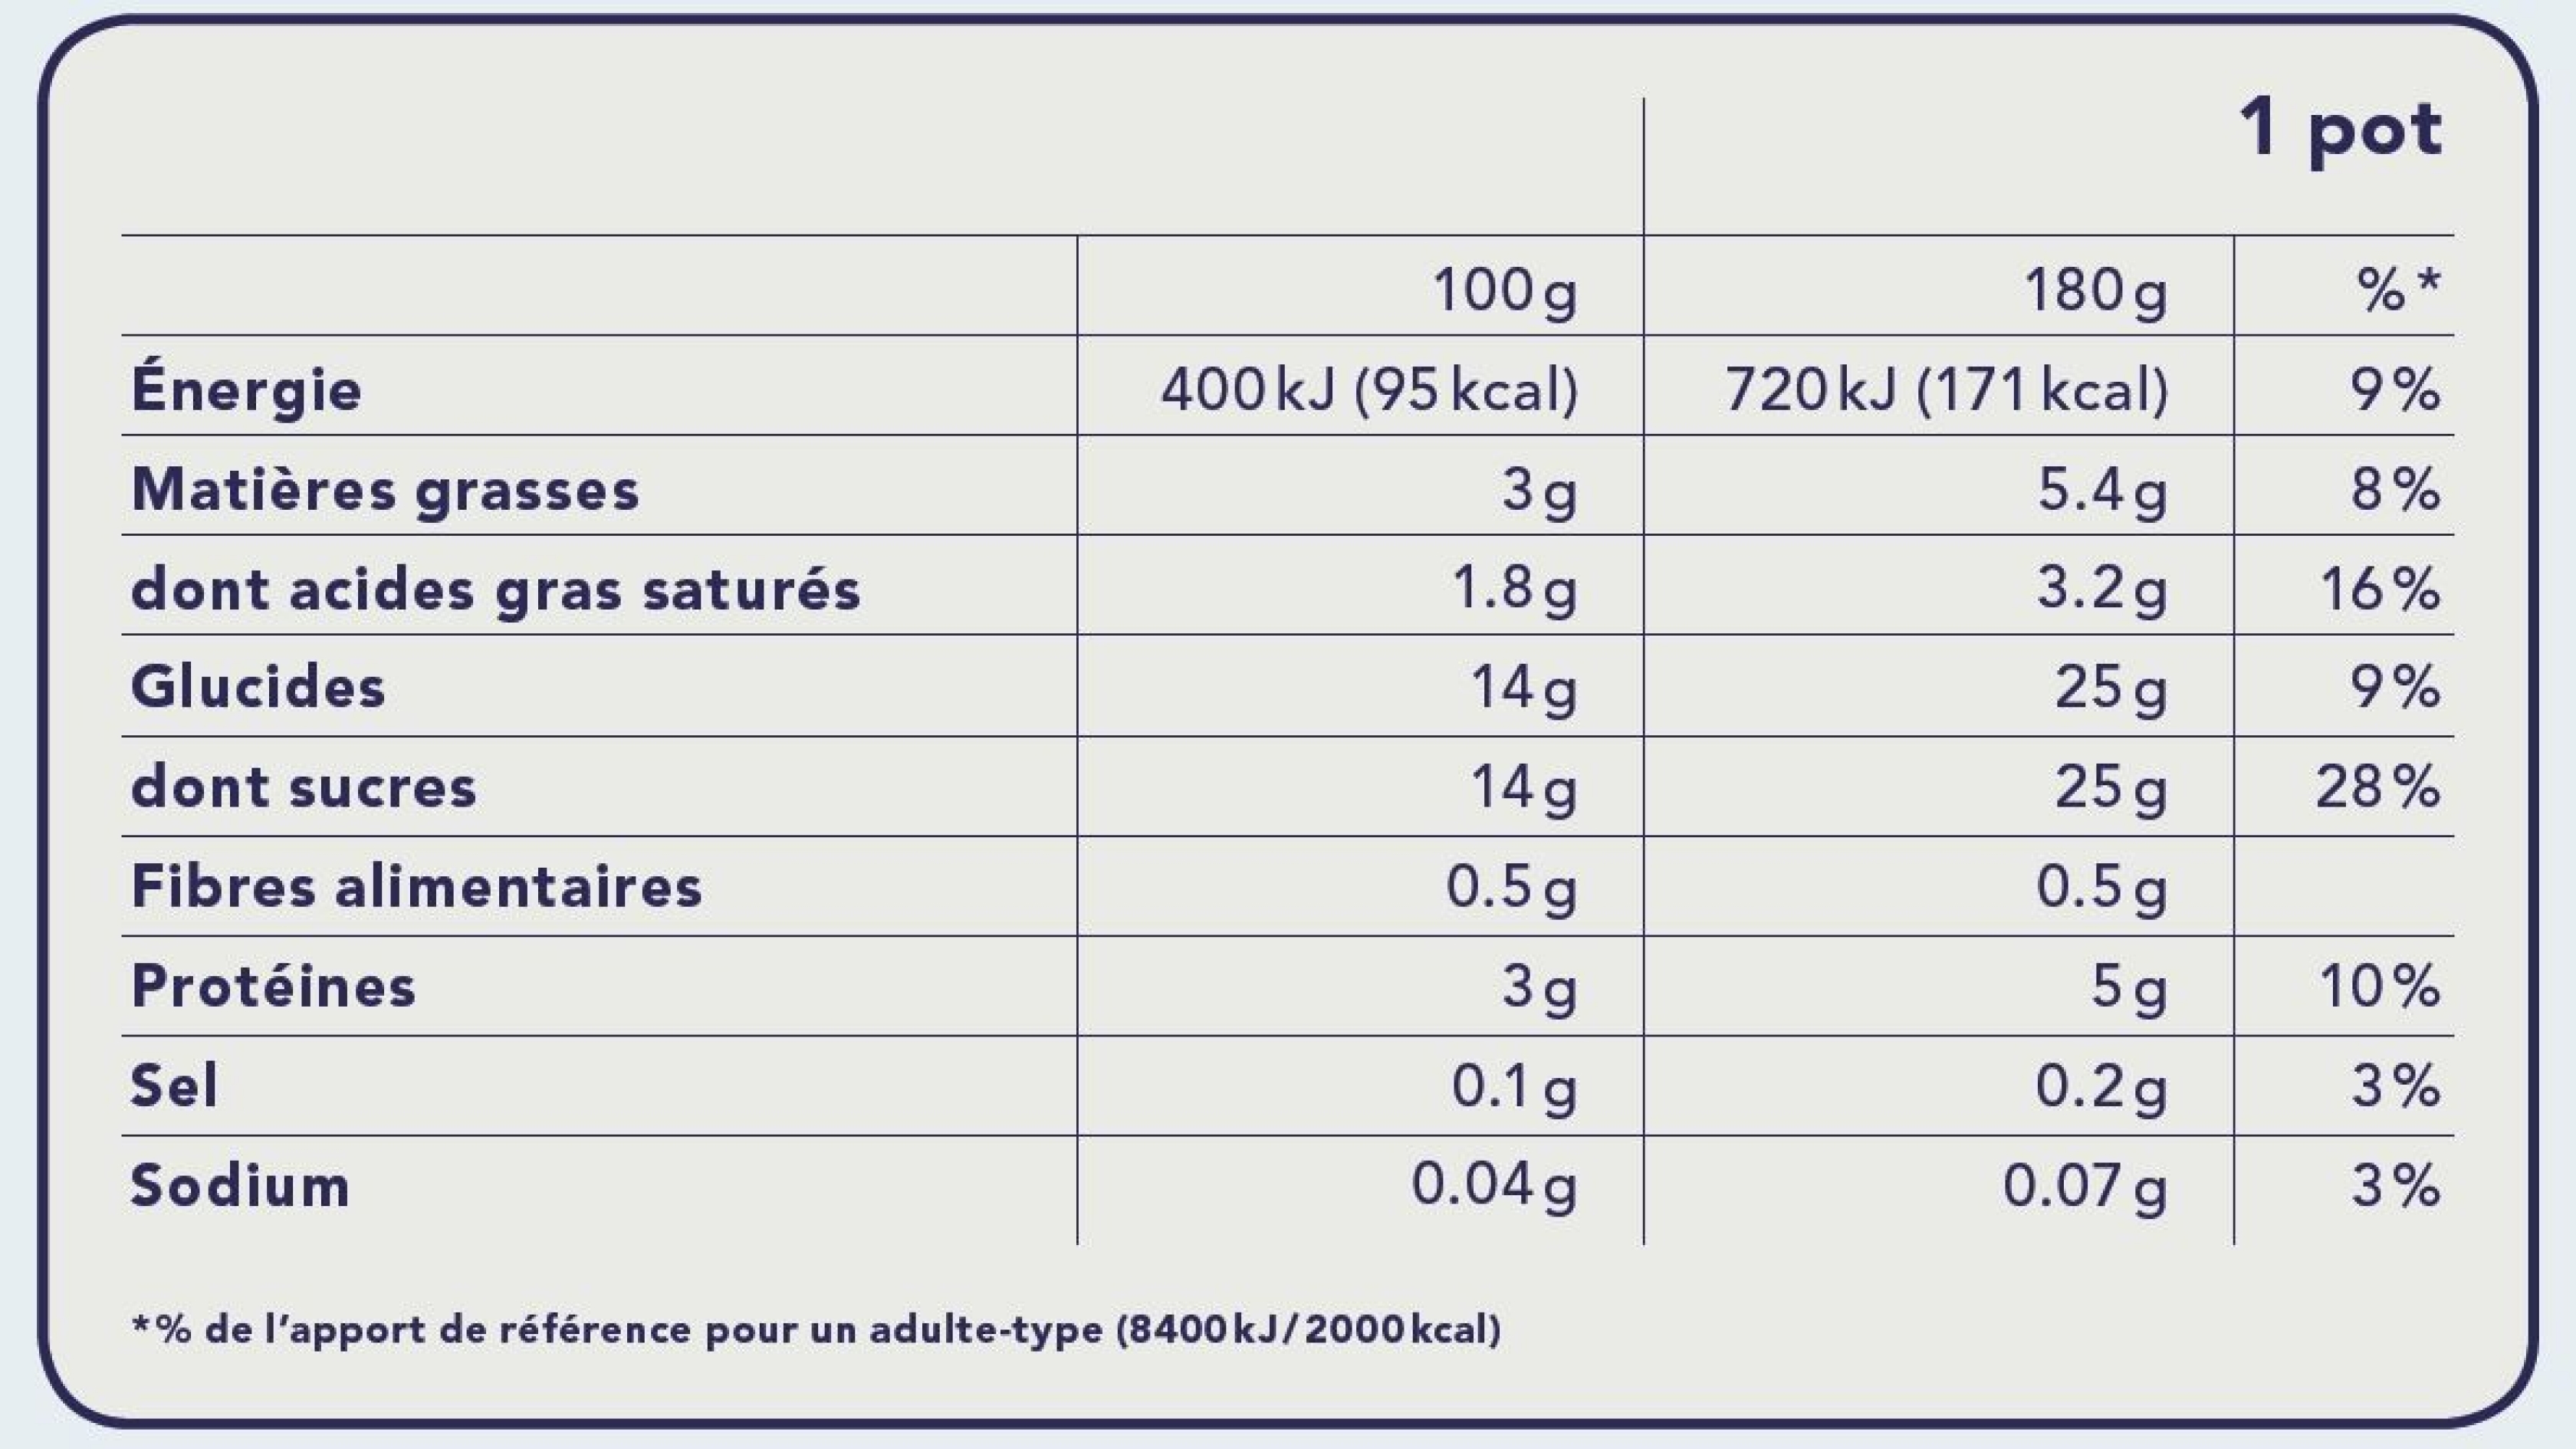 Étiquettes d'un pot de yogourt avec les valeurs nutritionnelles